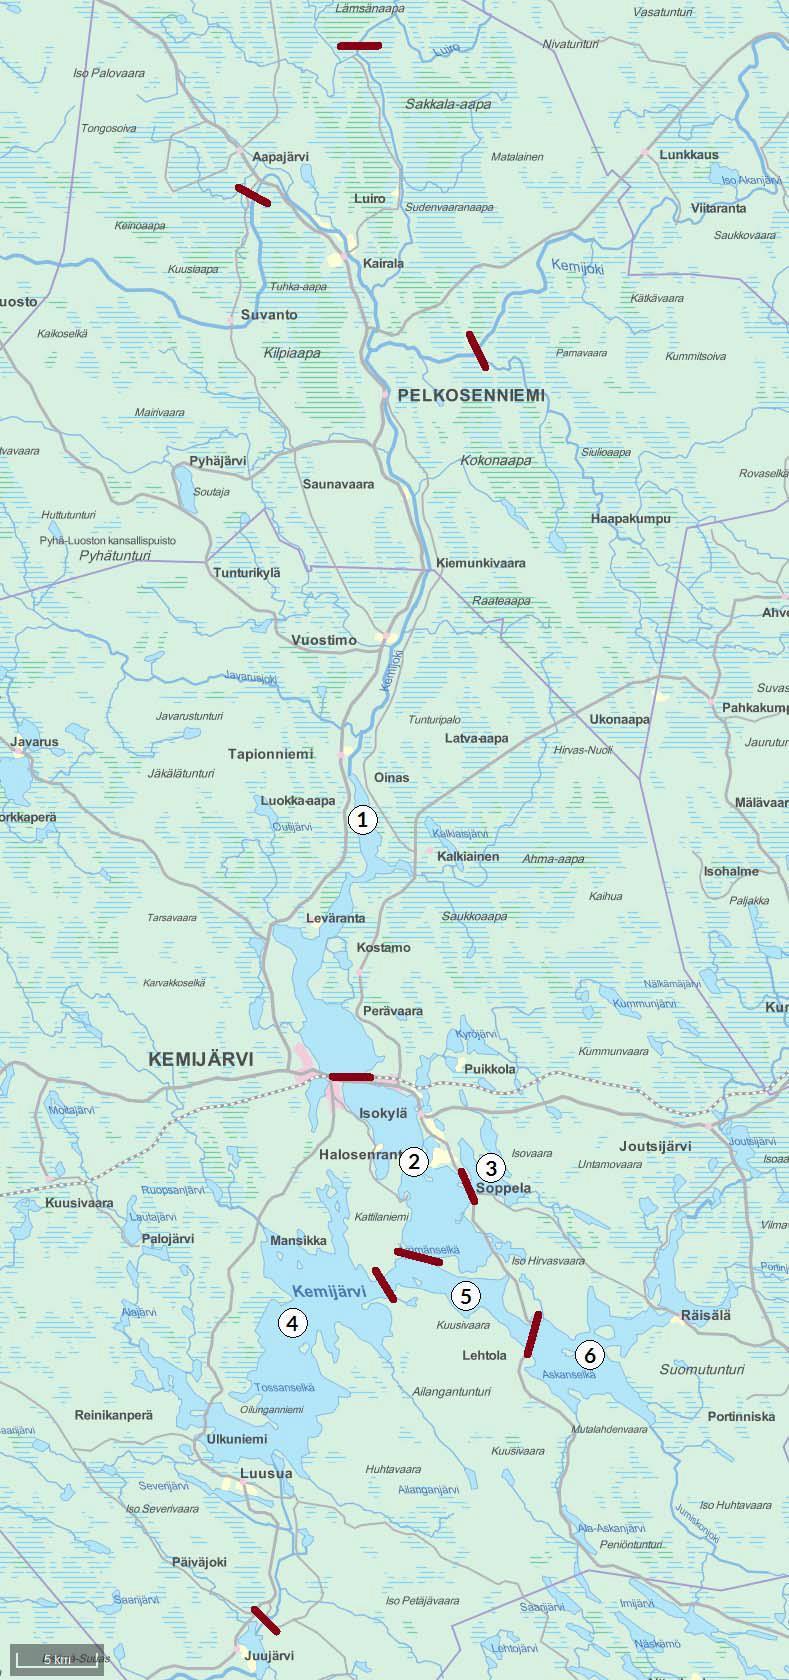 Kuva 6.7-4. Kemijärven maksuvelvoitetarkkailun osa-alueet rajoineen (muokattu kuvasta Paksuniemi 2016).